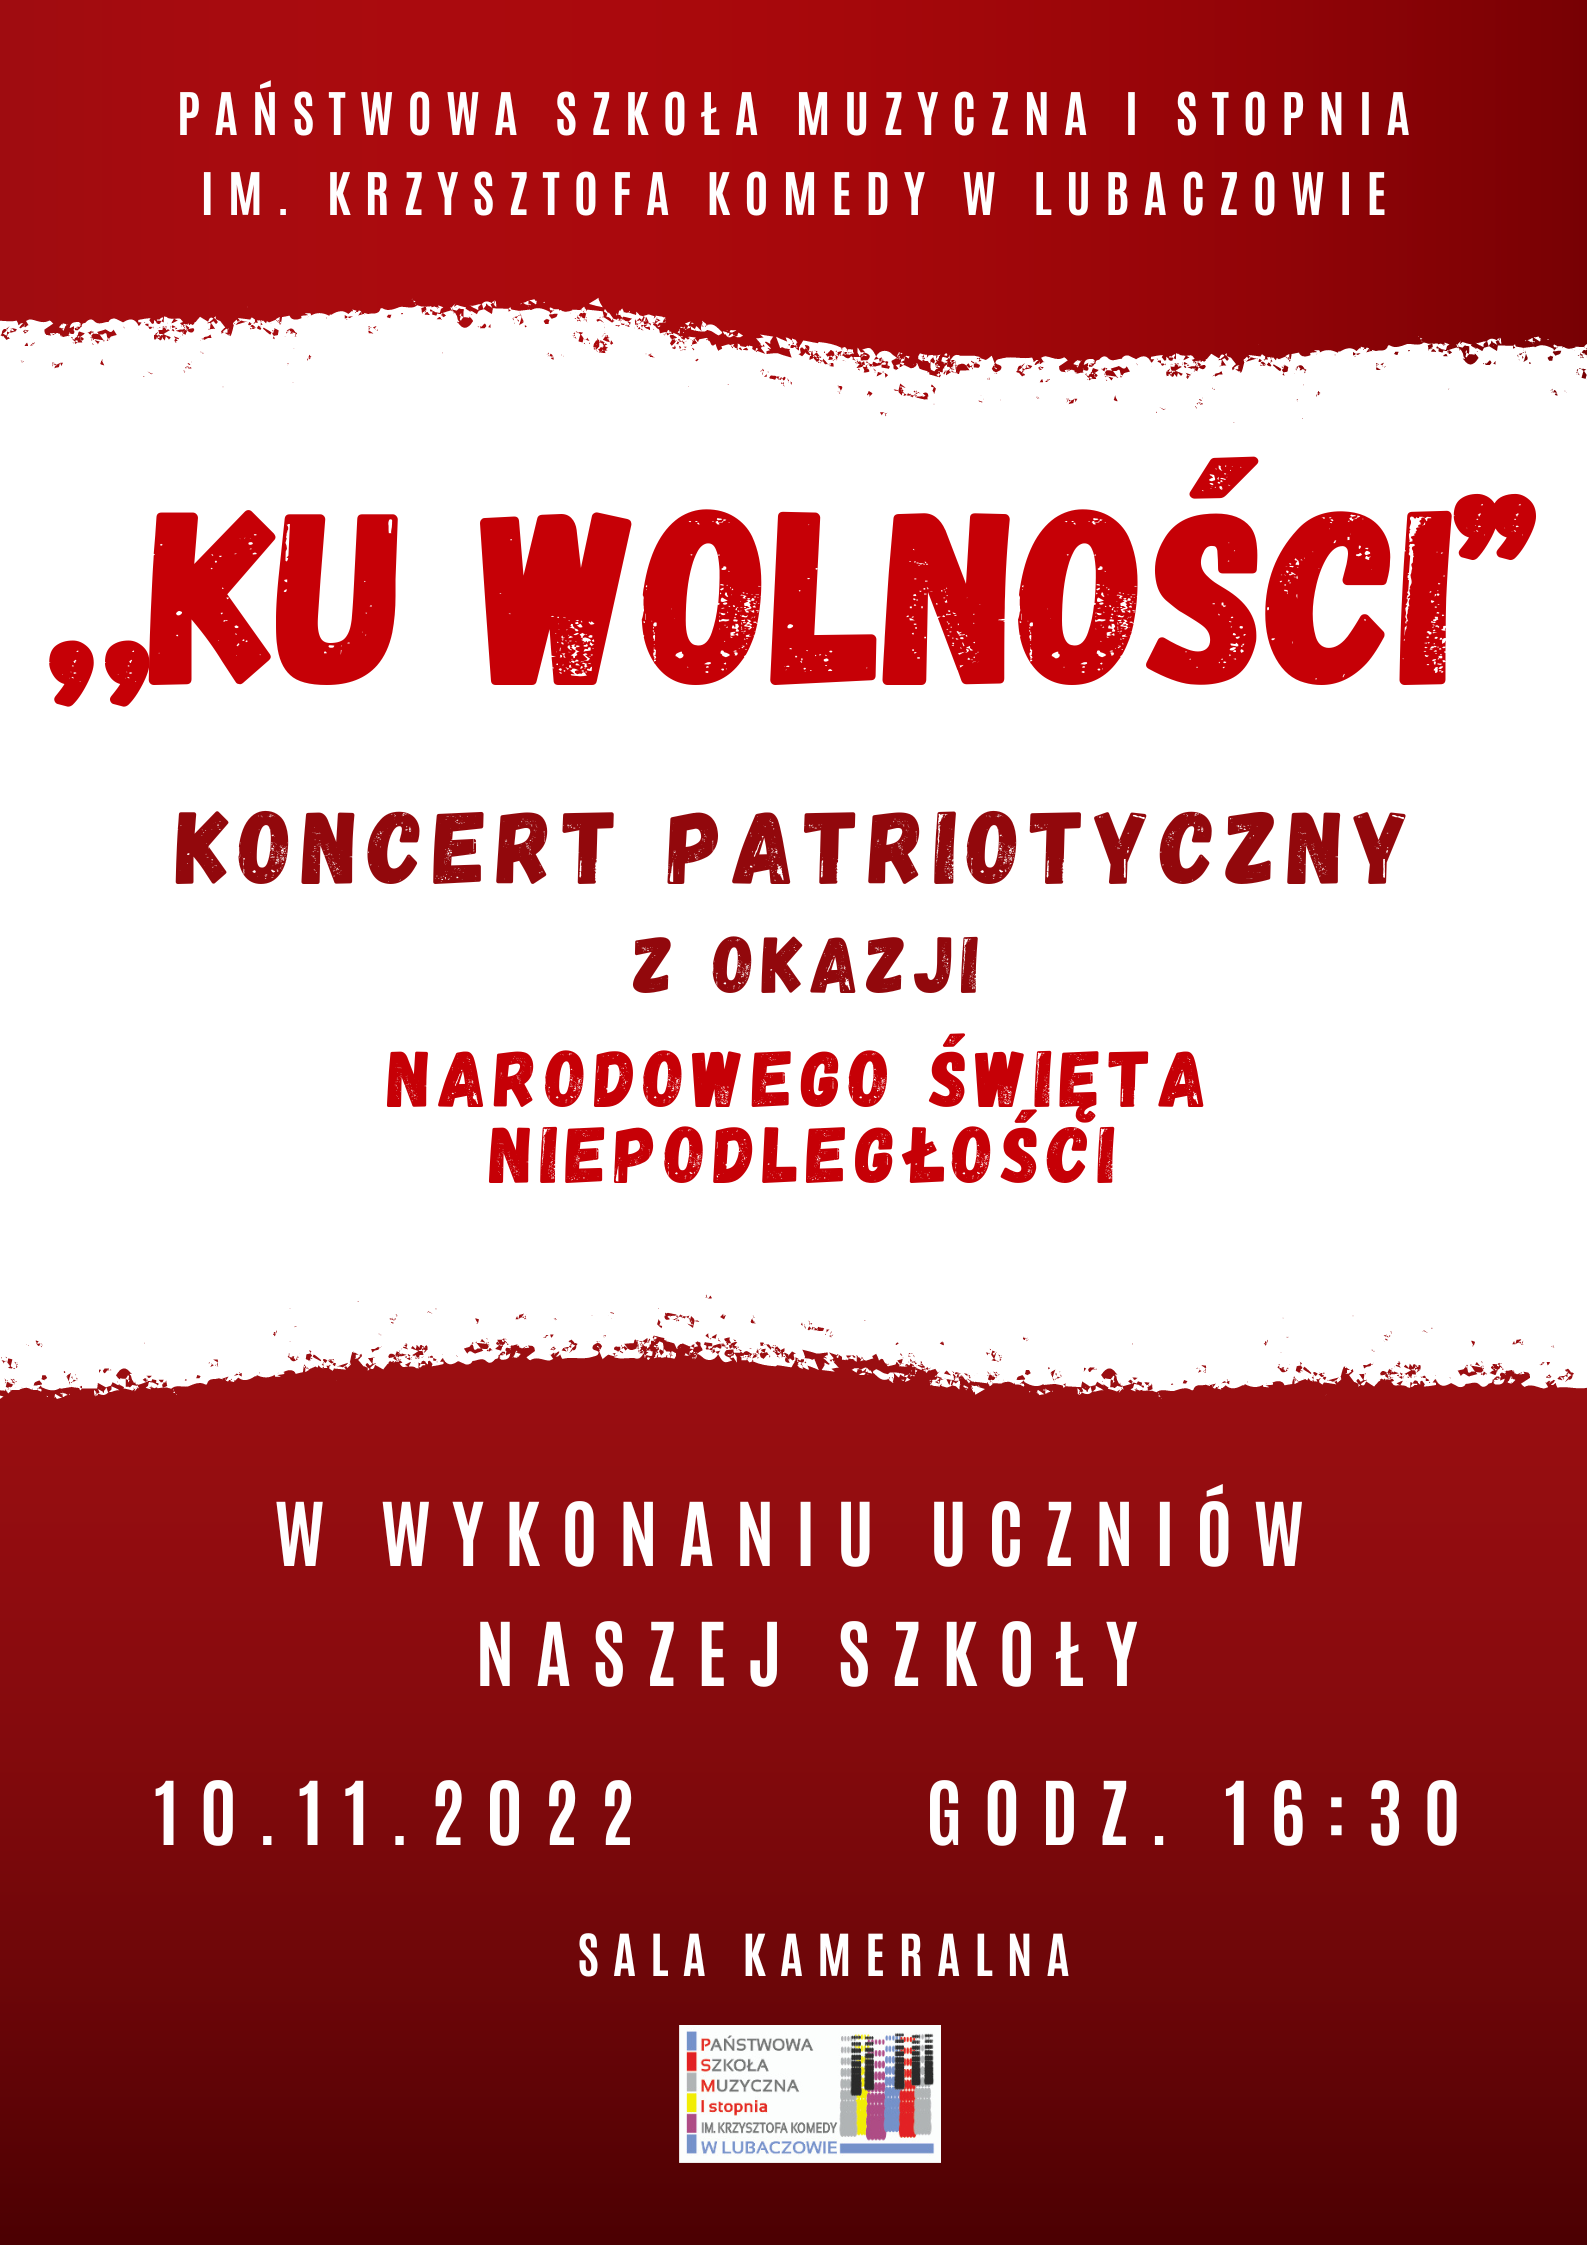 Biało czerwony plakat koncertu patriotycznego z logo szkoły na dole i tekstem "Ku wolności koncert patriotyczny z okazji narodowego święta niepodległości w wykonaniu uczniów szkoły - 10.11.2022 godz. 16.30 - sala kameralna"